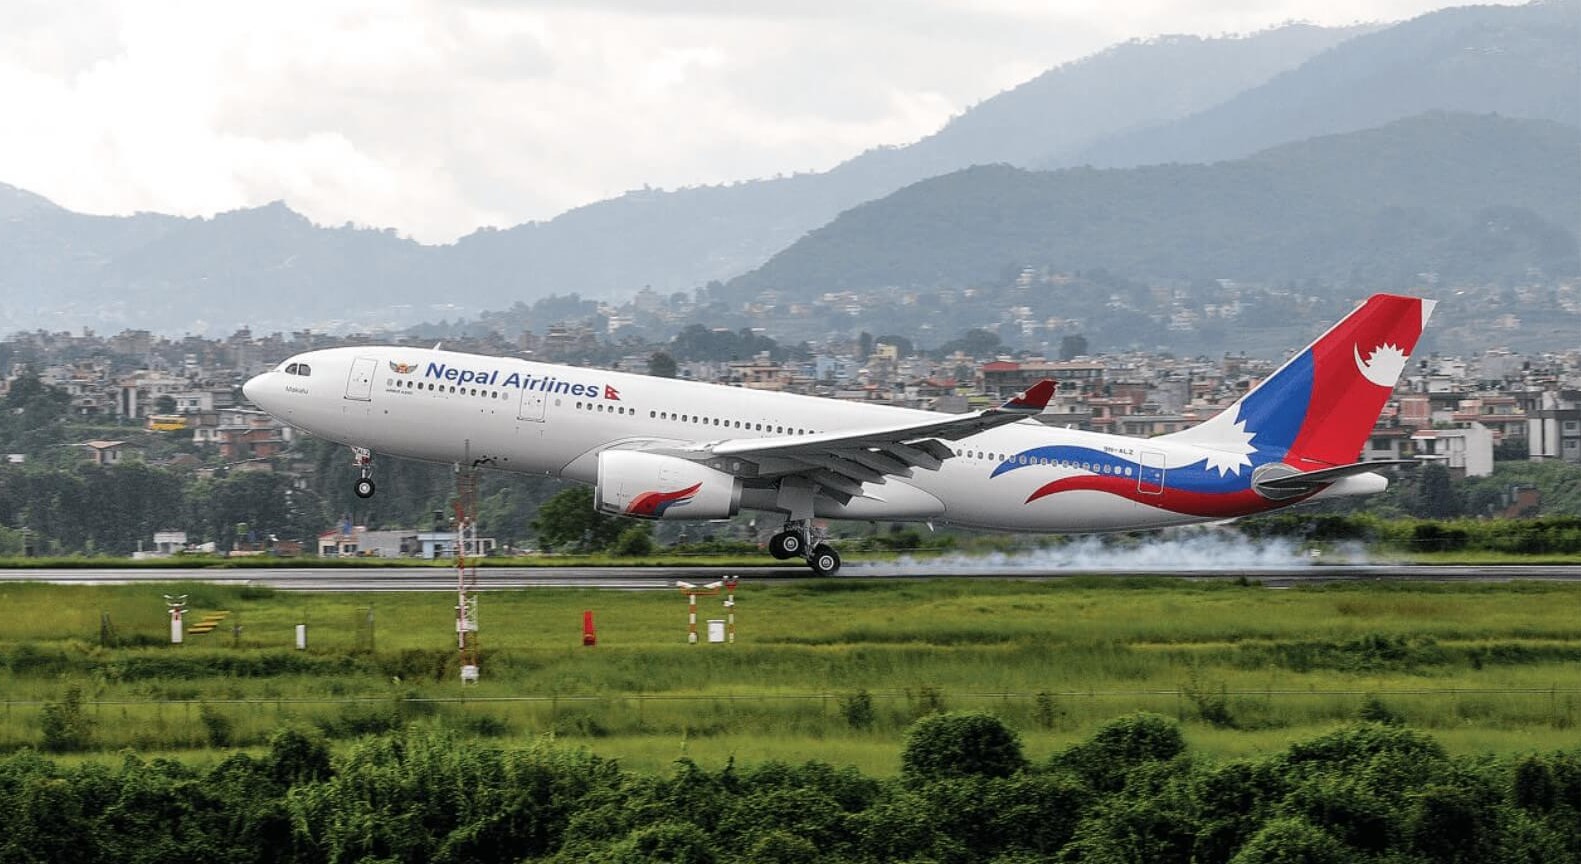 नेपाल एयरलाइन्सकी एयर होस्टेसमाथि आकाशमै दुर्व्यवहार, चालक दलका सबै सदस्य निलम्बित